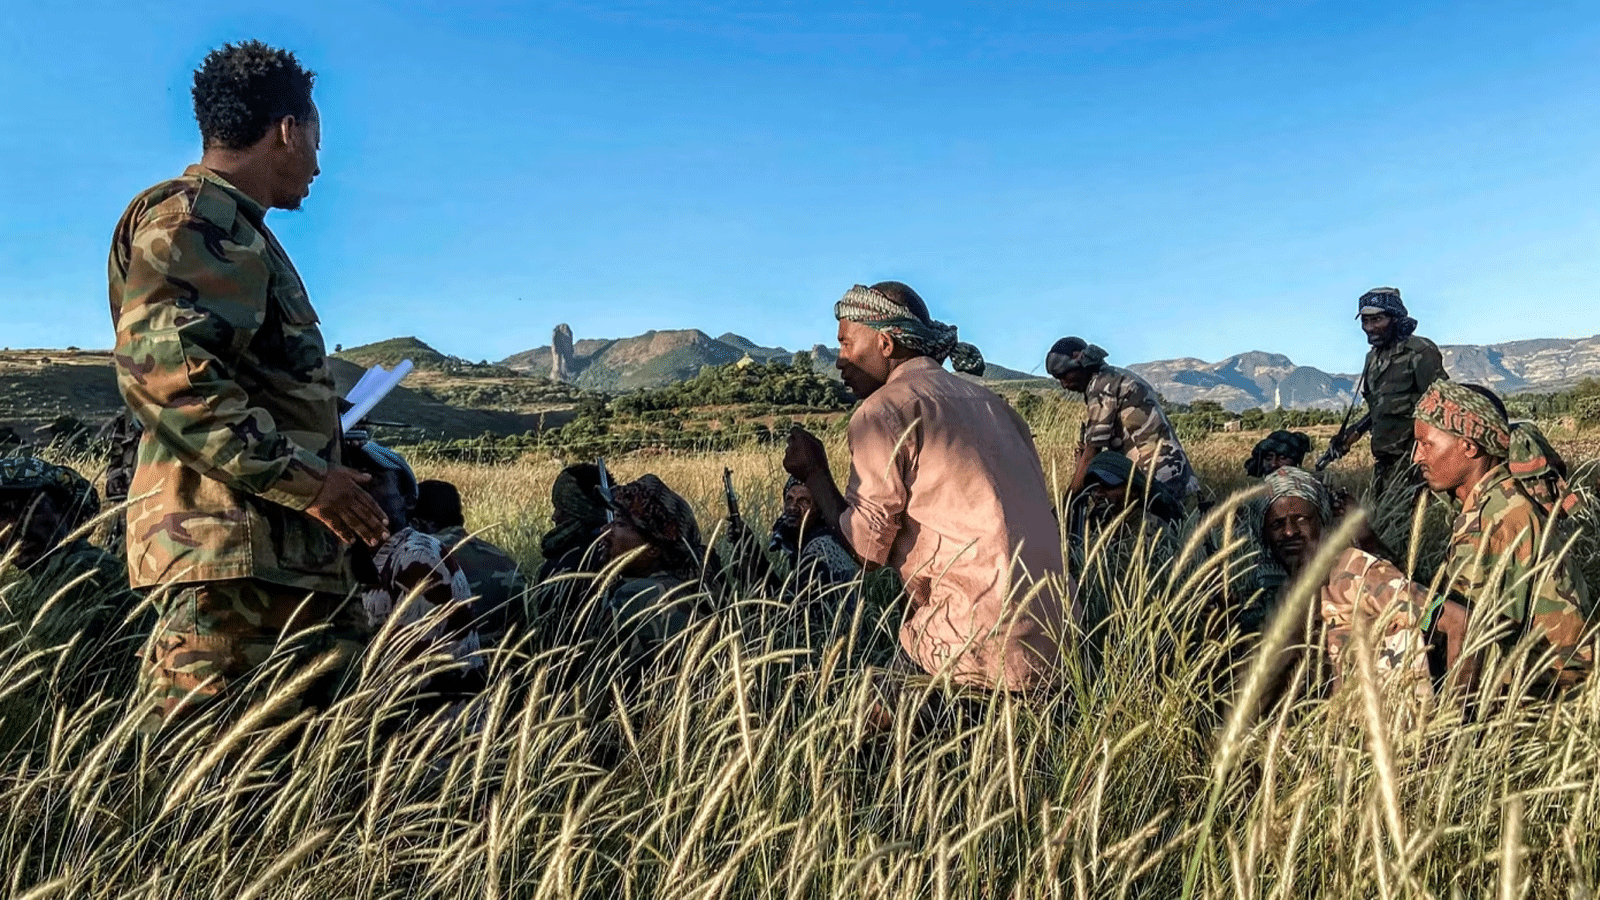 صورة أرشيفية لرجال الميليشيات يتلقون تدريبًا بالقرب من بحر دار، إثيوبيا